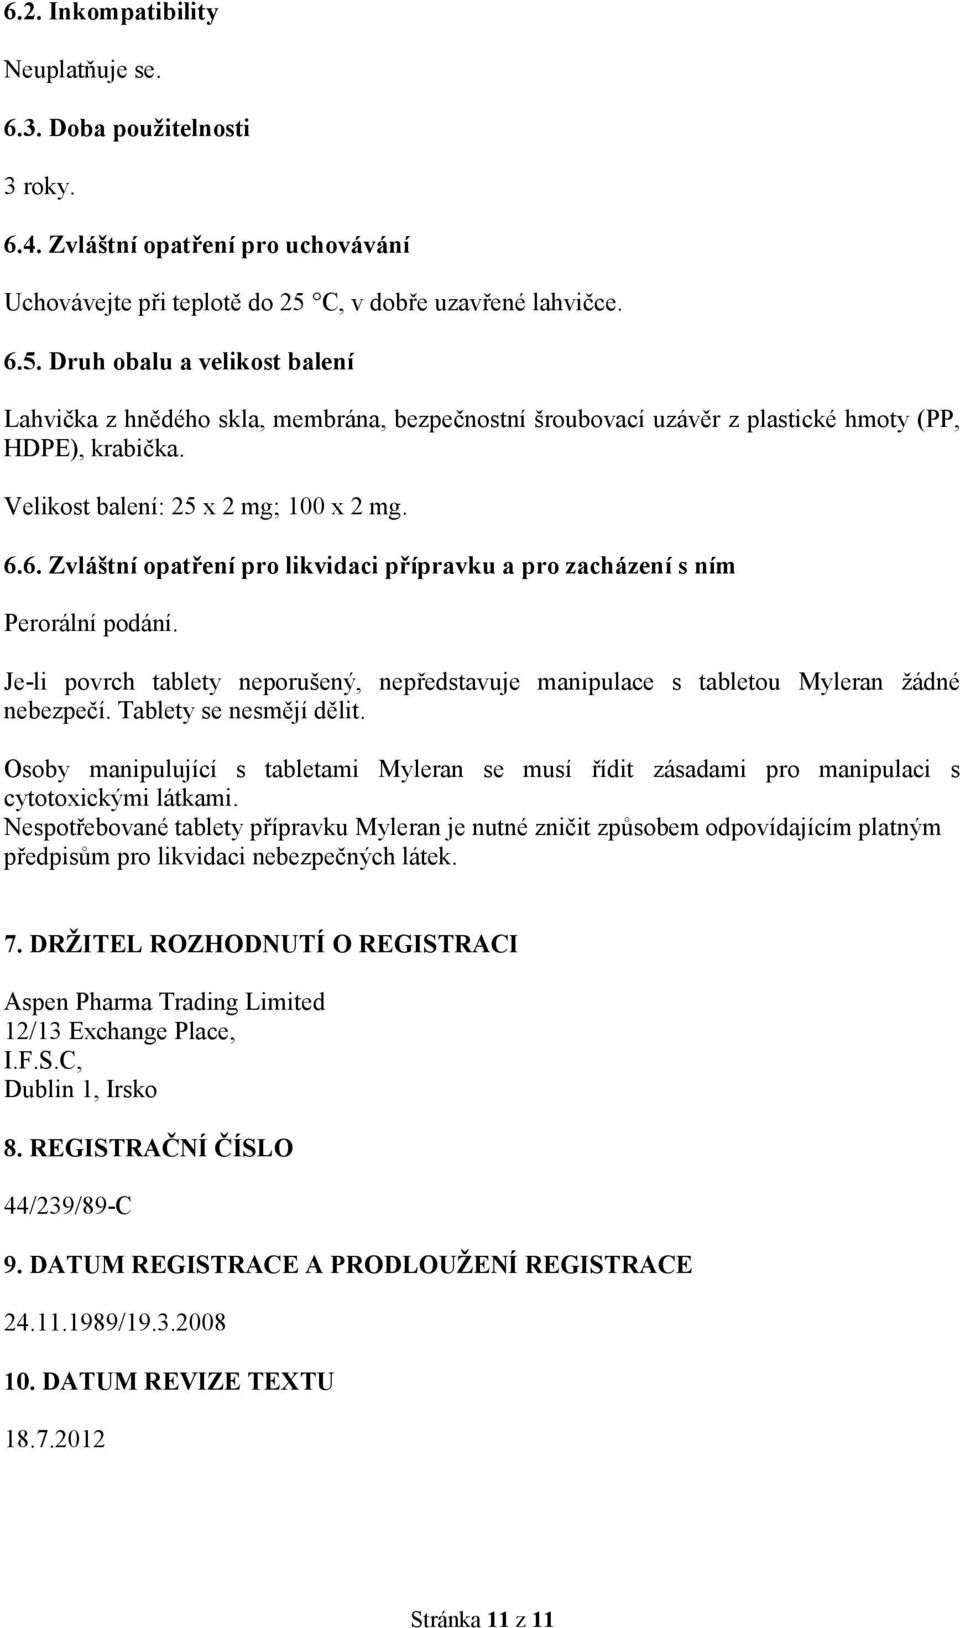 Velikost balení: 25 x 2 mg; 100 x 2 mg. 6.6. Zvláštní opatření pro likvidaci přípravku a pro zacházení s ním Perorální podání.